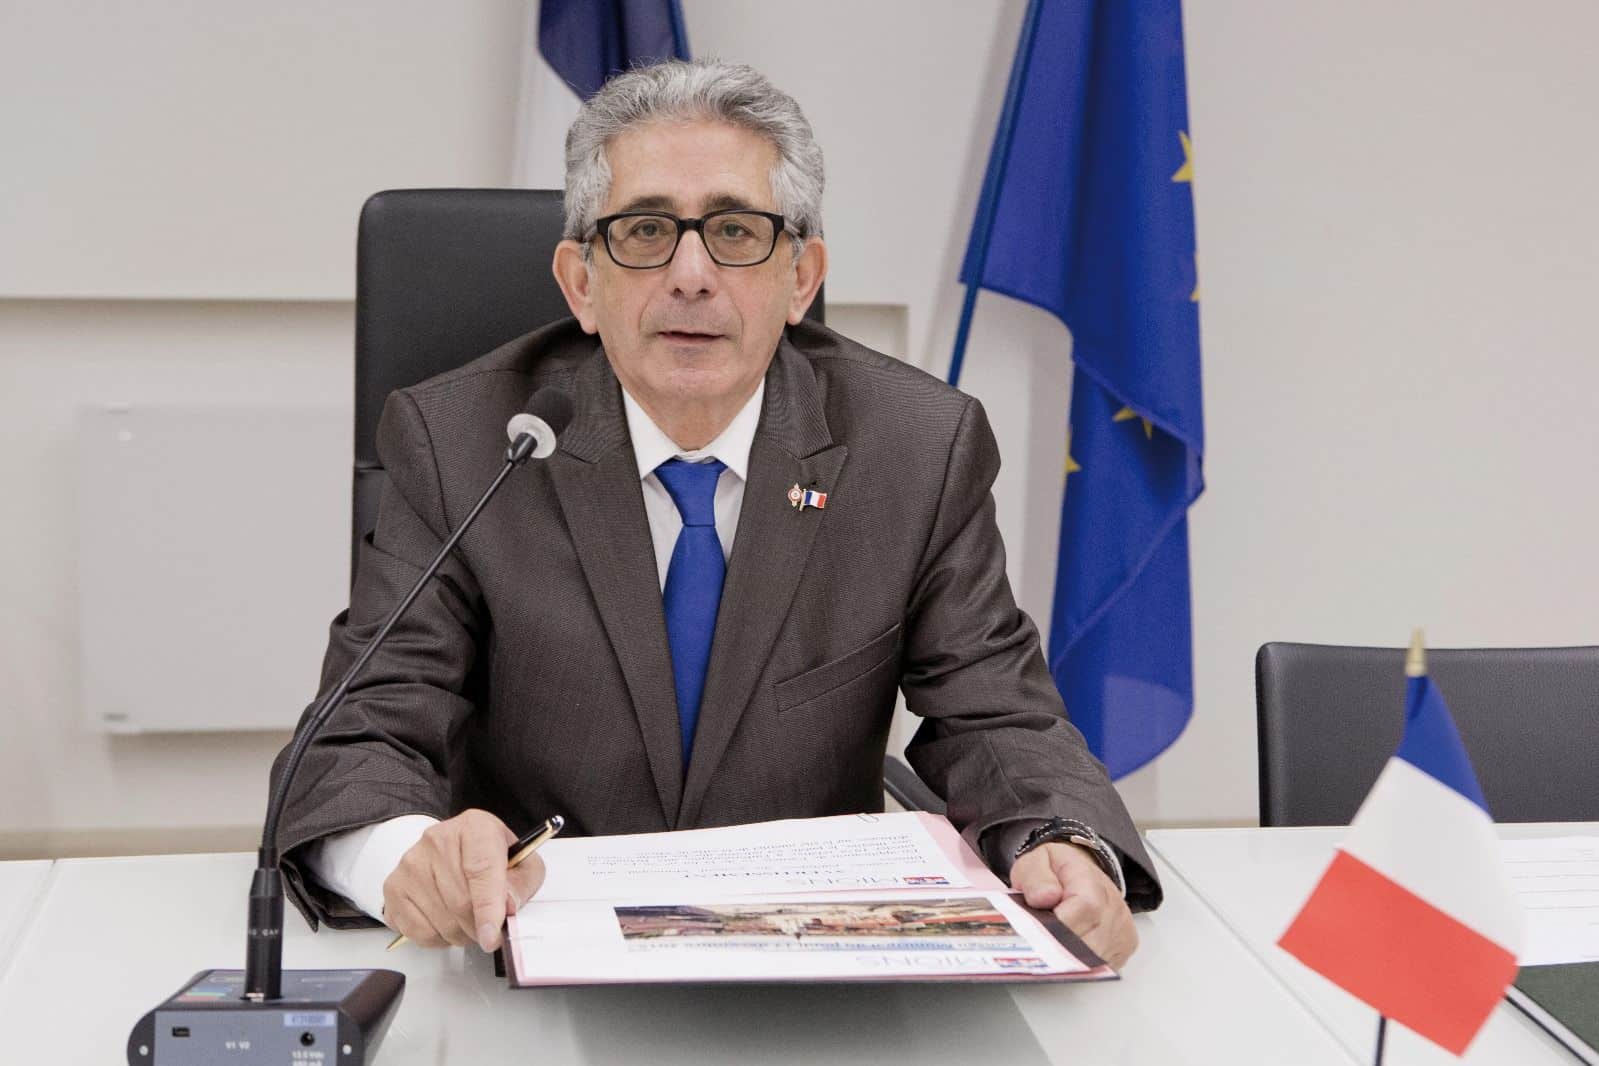 Un maire du Rhône démissionne pour les propos antisémites qu’il subit